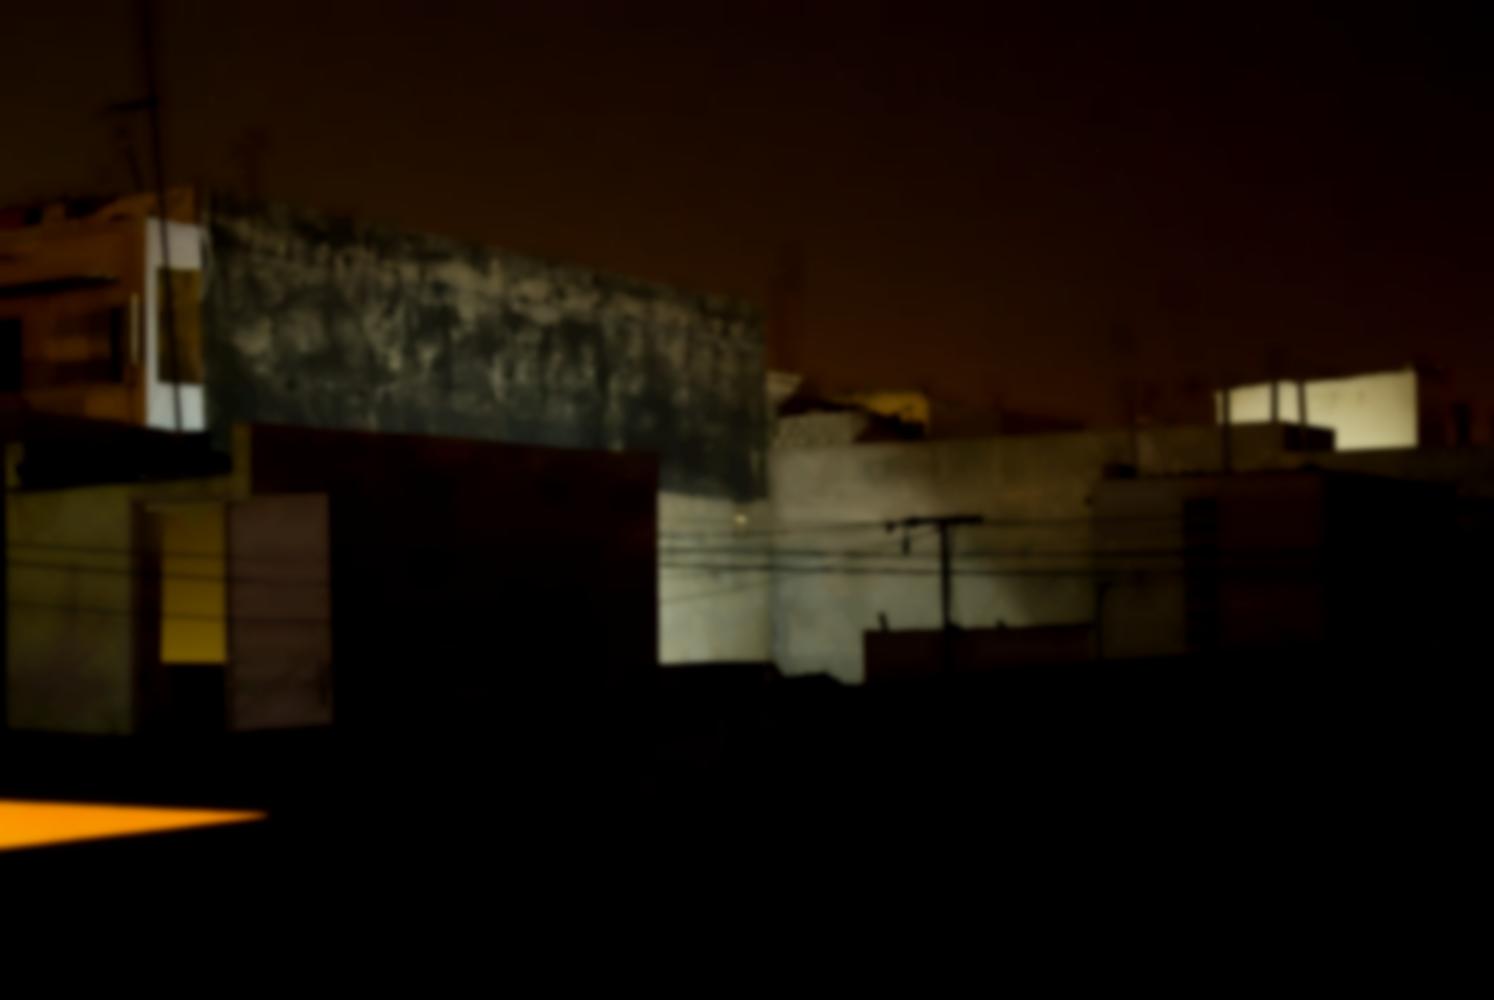 Les immeubles voisins de nuit, murs de parpaings ou peints, certains éclairés par une lumière blanche, la porte d'accès à un toit voisin, des fils électriques. Dakar, Sénégal, mars 2010.